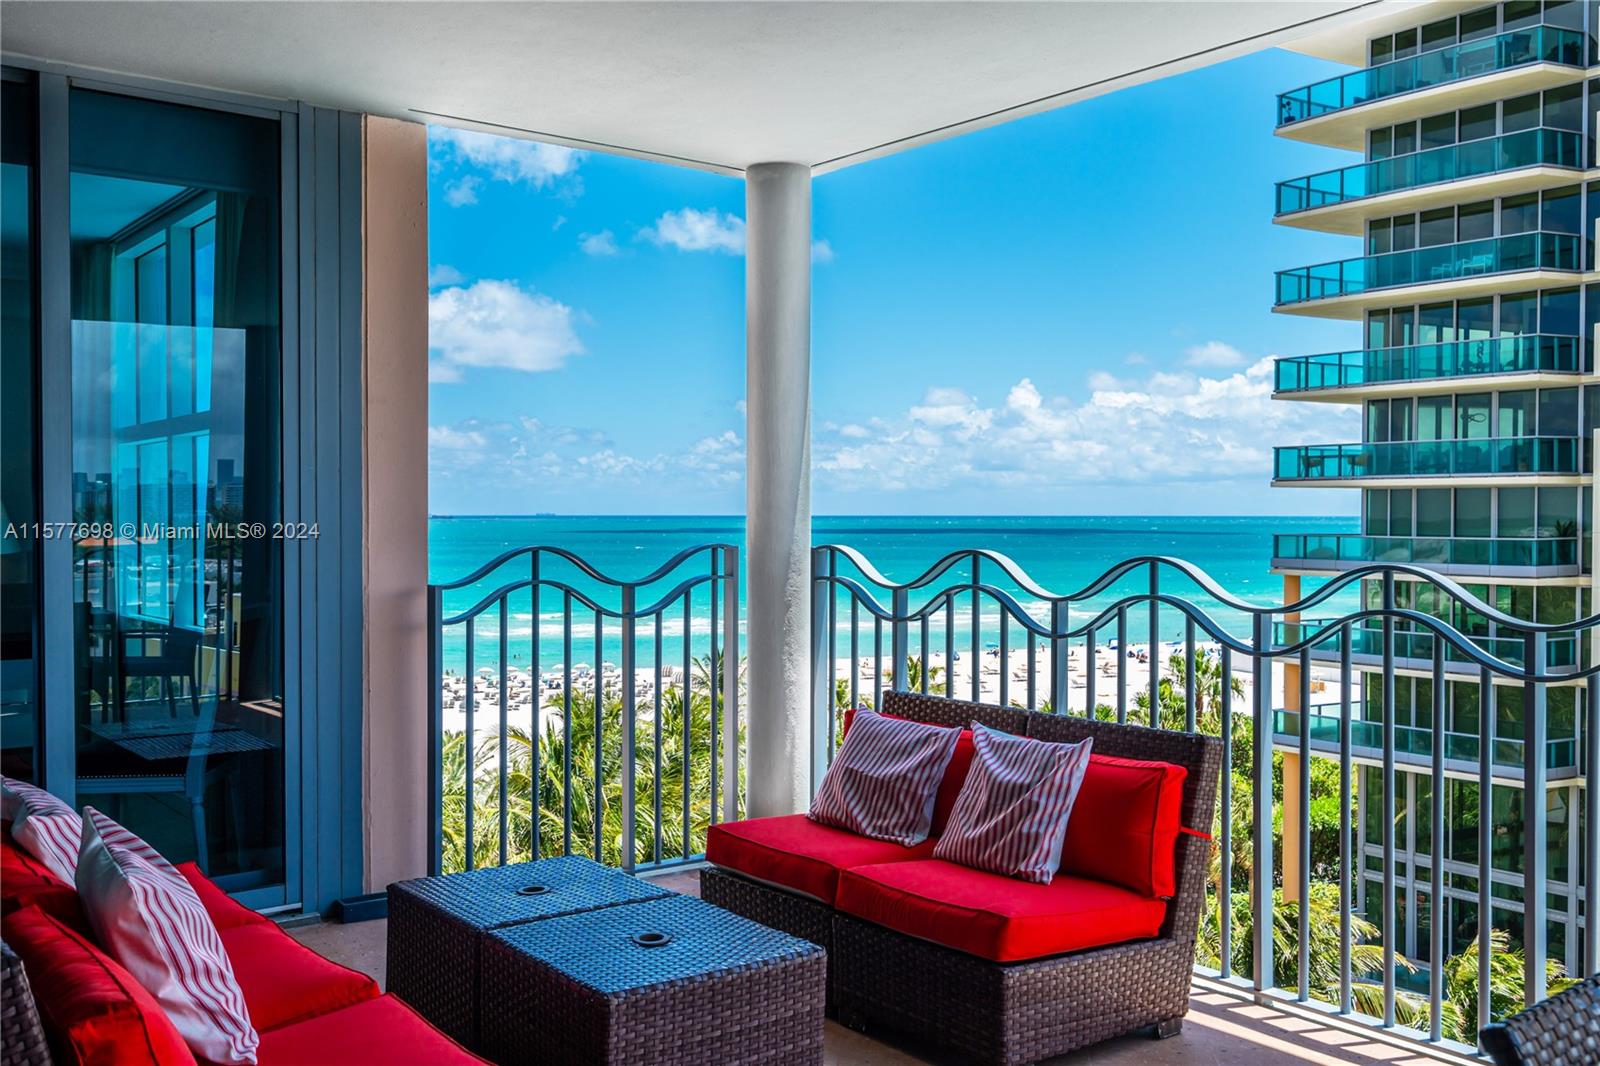 Rental Property at 1500 Ocean Dr 704, Miami Beach, Miami-Dade County, Florida - Bedrooms: 2 
Bathrooms: 3  - $15,000 MO.